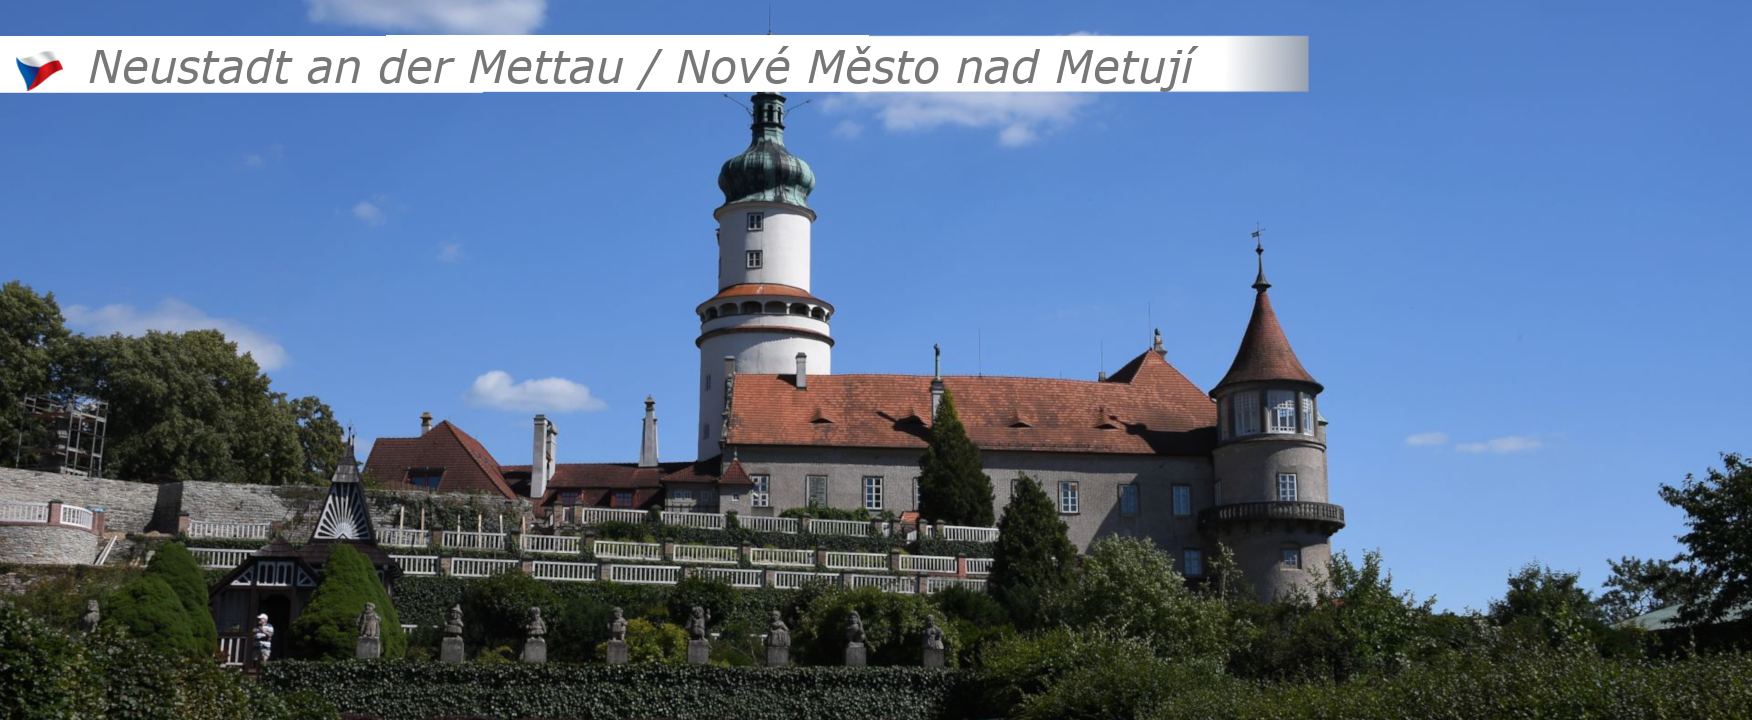 Nové Město nad Metují / Neustadt an der Mettau